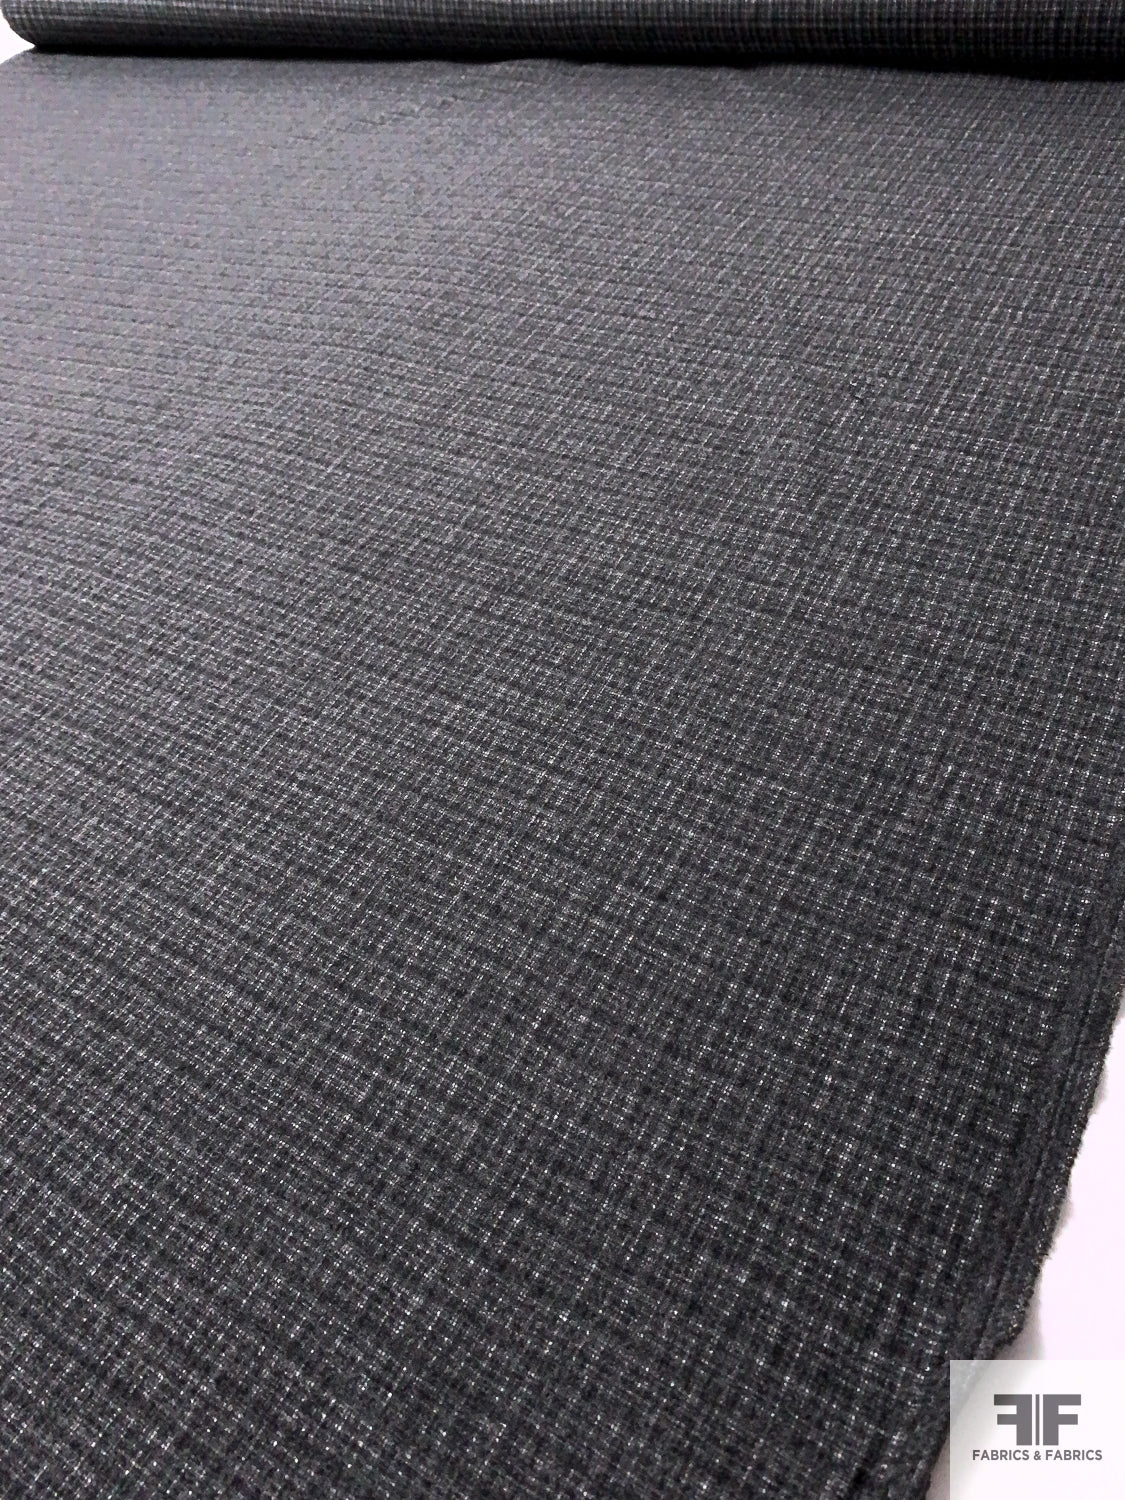 Italian Hazy Plaid Brushed Suiting - Black / Grey / Off-White